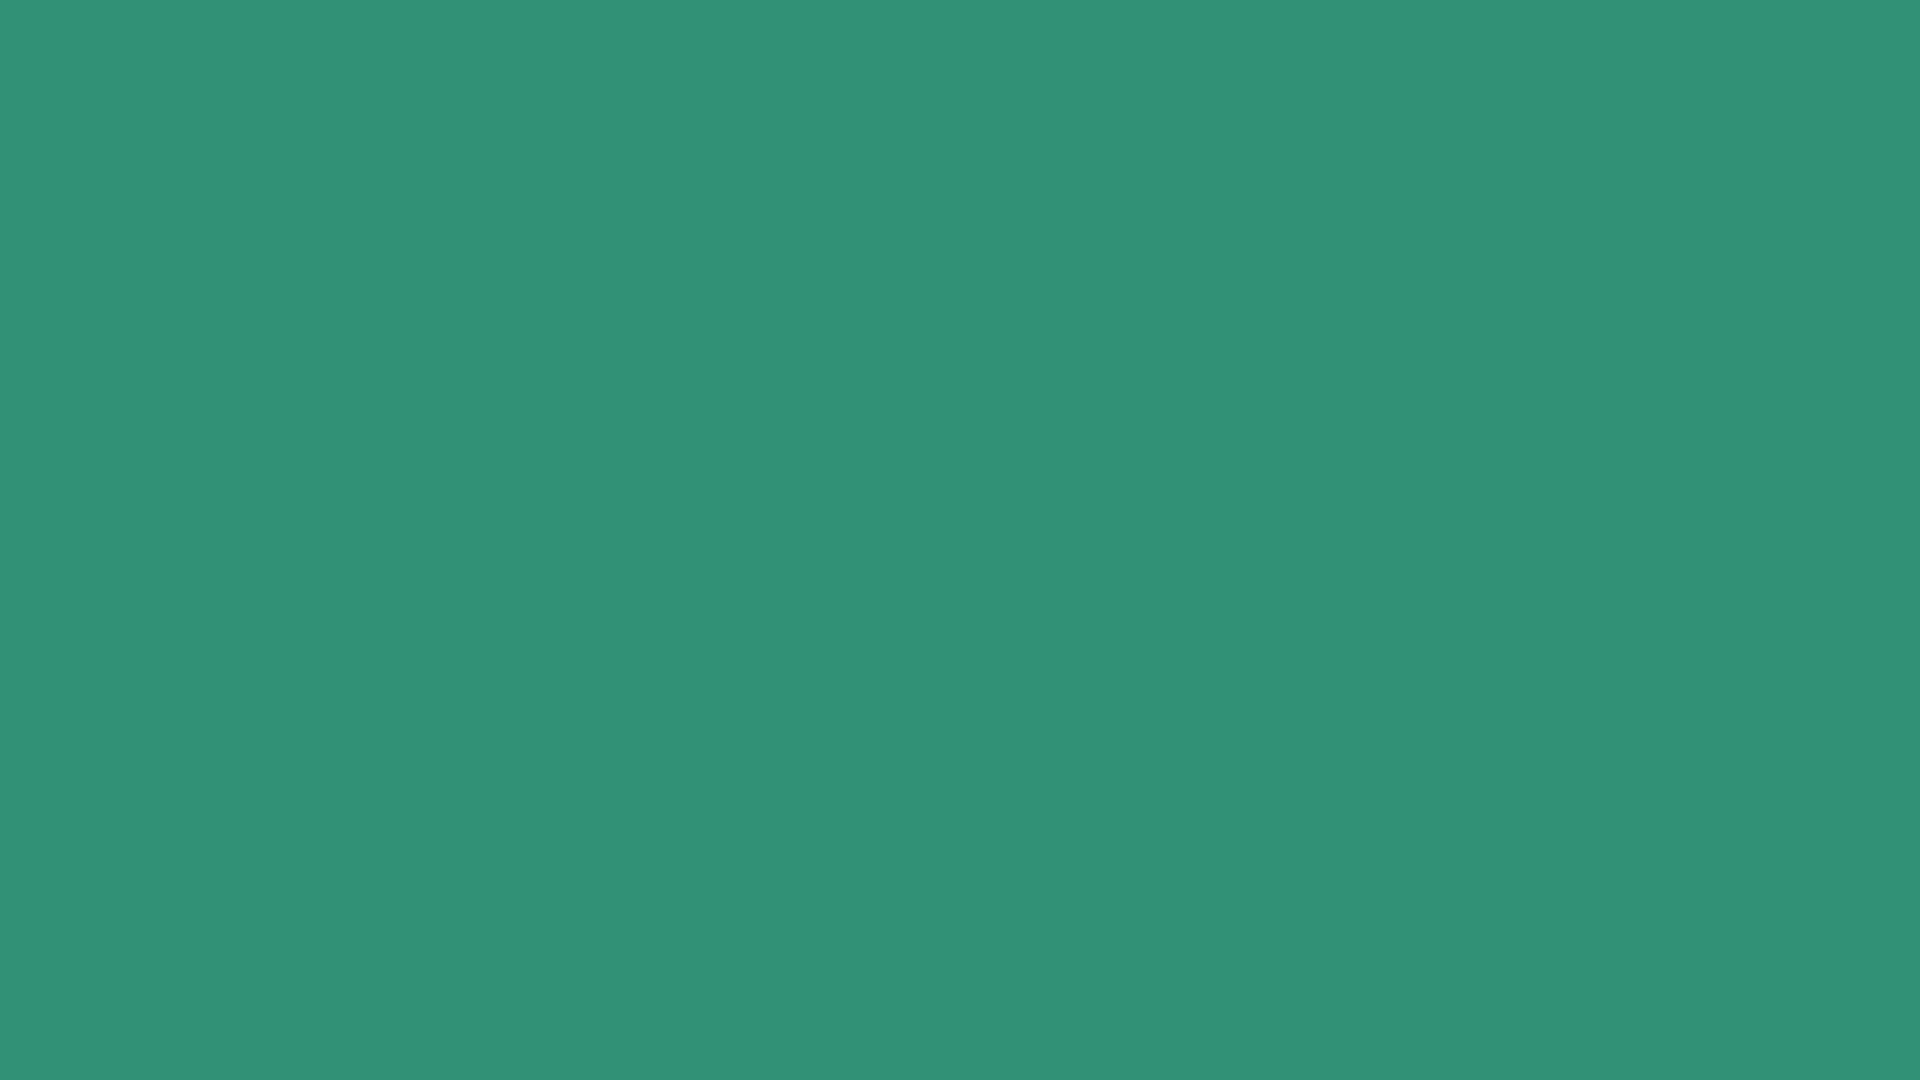 Nền màu đơn sắc 1920x1080 Illuminating Emerald Solid Color Background với sắc xanh ngọc bích rực rỡ sẽ khiến màn hình của bạn trở nên cuốn hút và tươi mới hơn bao giờ hết.